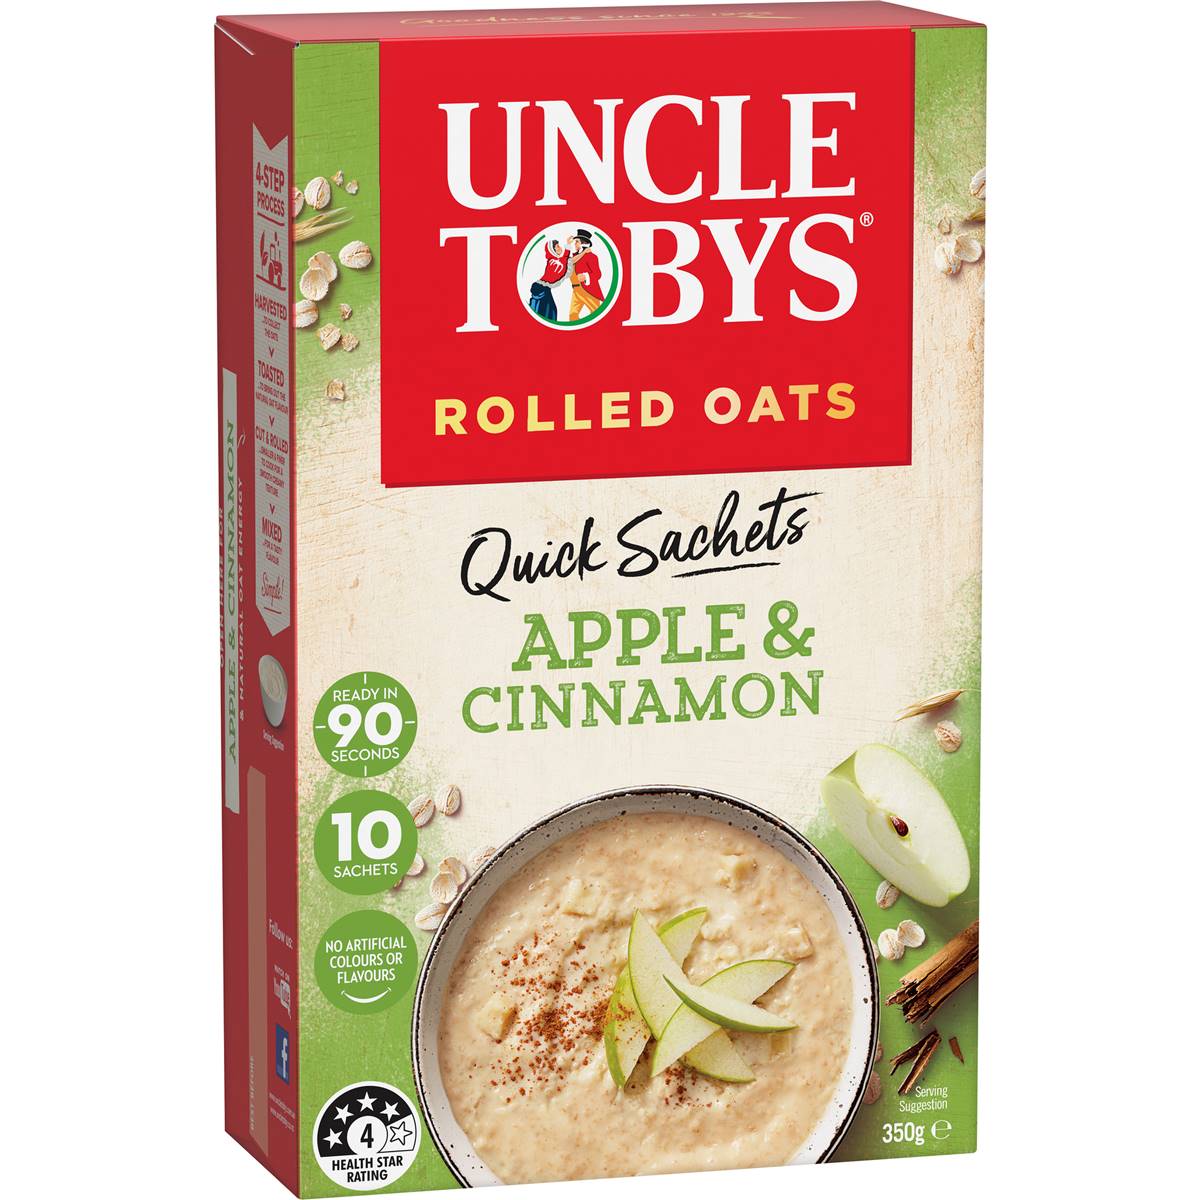 Calories in Uncle Tobys Oats Quick Sachets Apple & Cinnamon Porridge